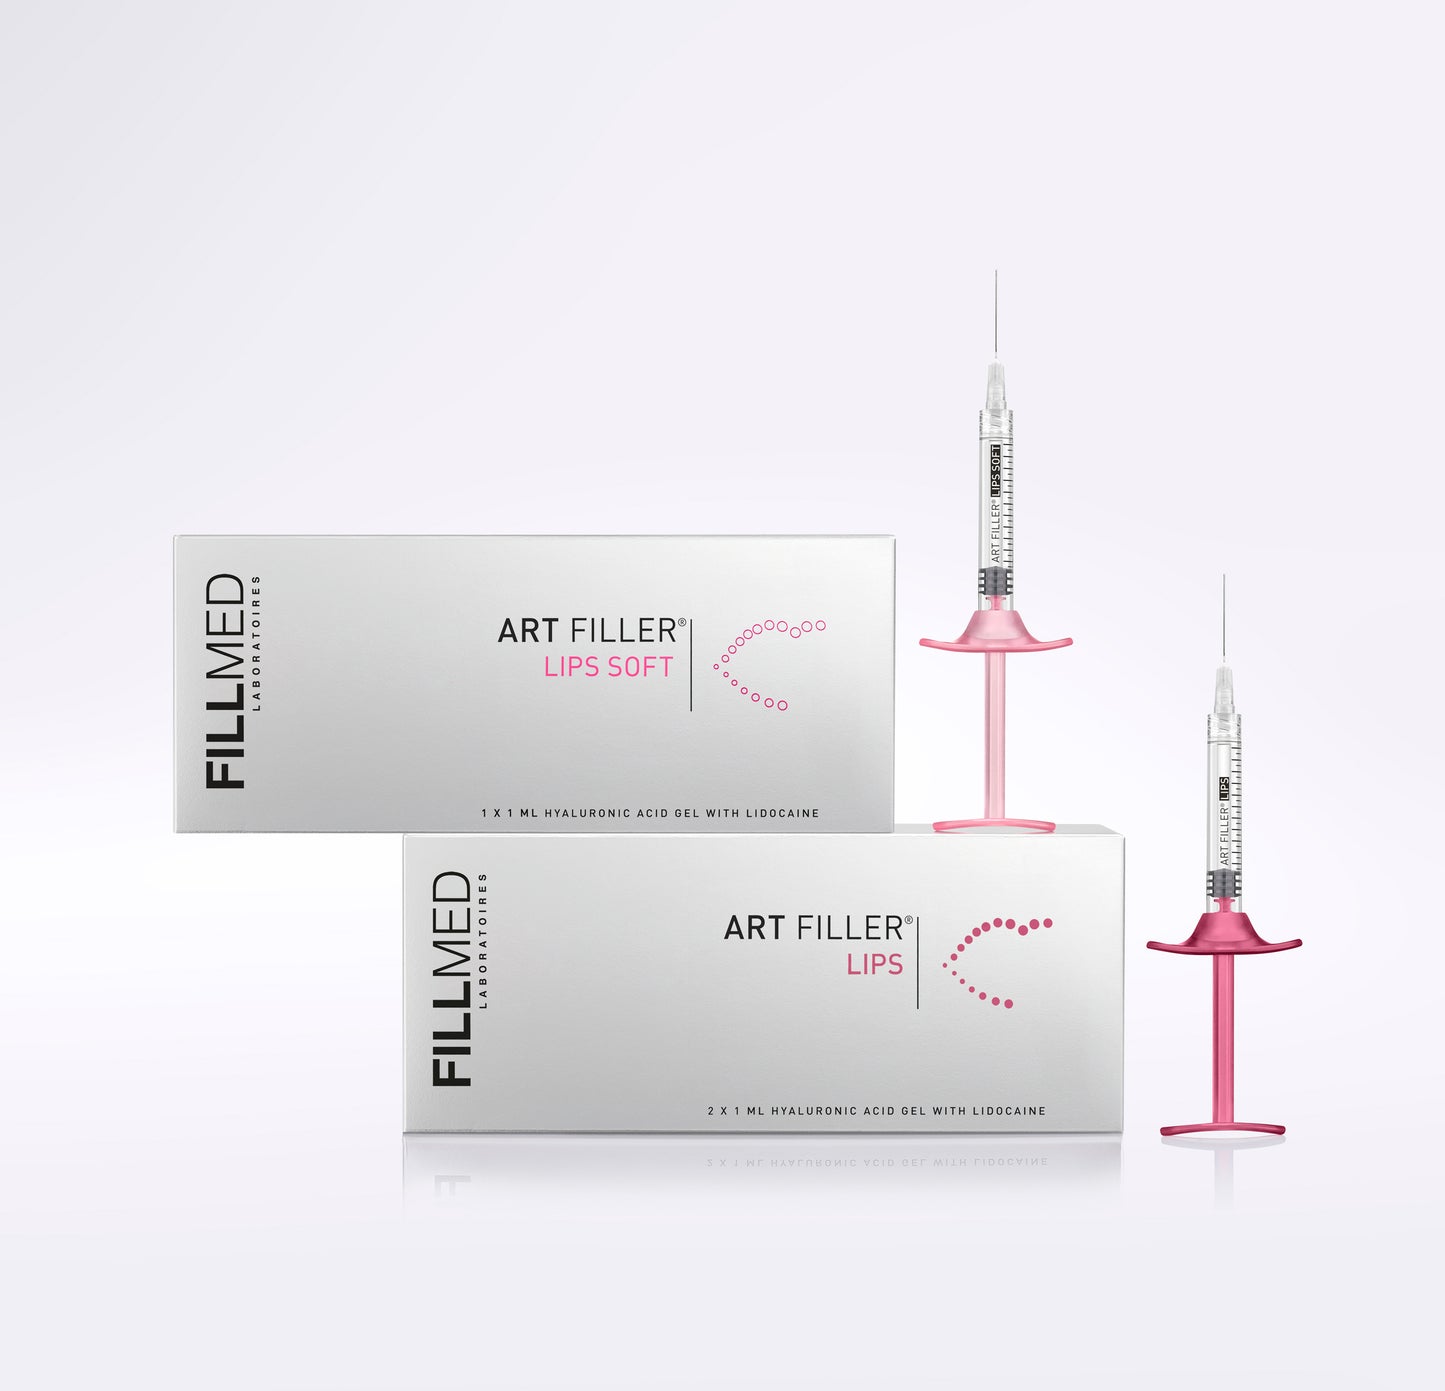 Fillmed Art Filler Lips Lidocaine (2 X 1ml)